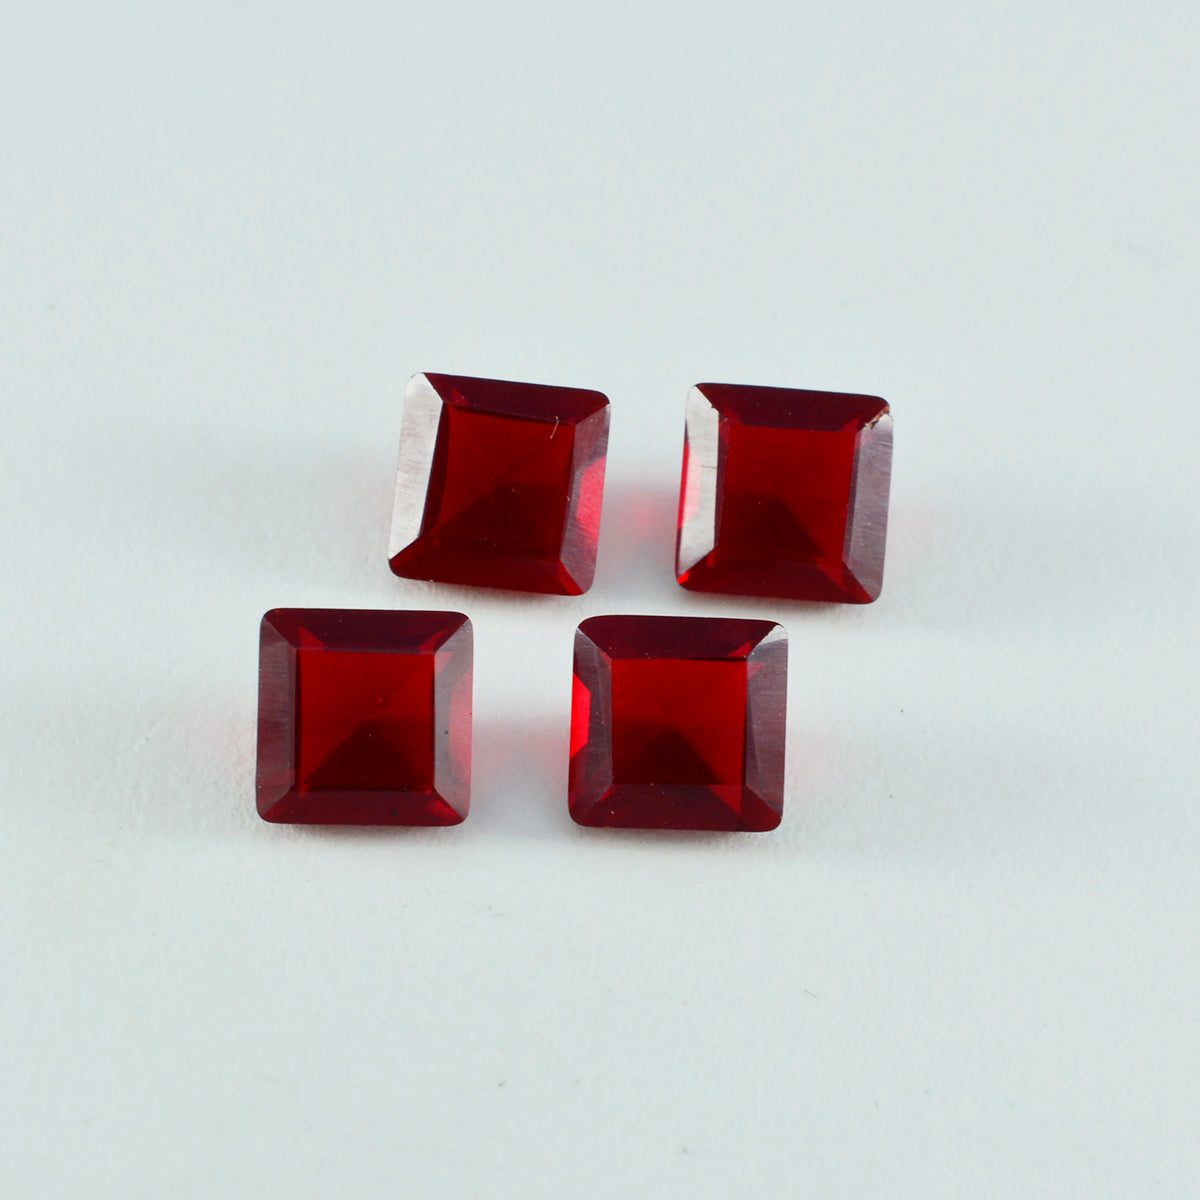 riyogems 1 шт., красные рубины с цирконием, ограненные, 10x10 мм, квадратной формы, качественные, россыпные драгоценные камни